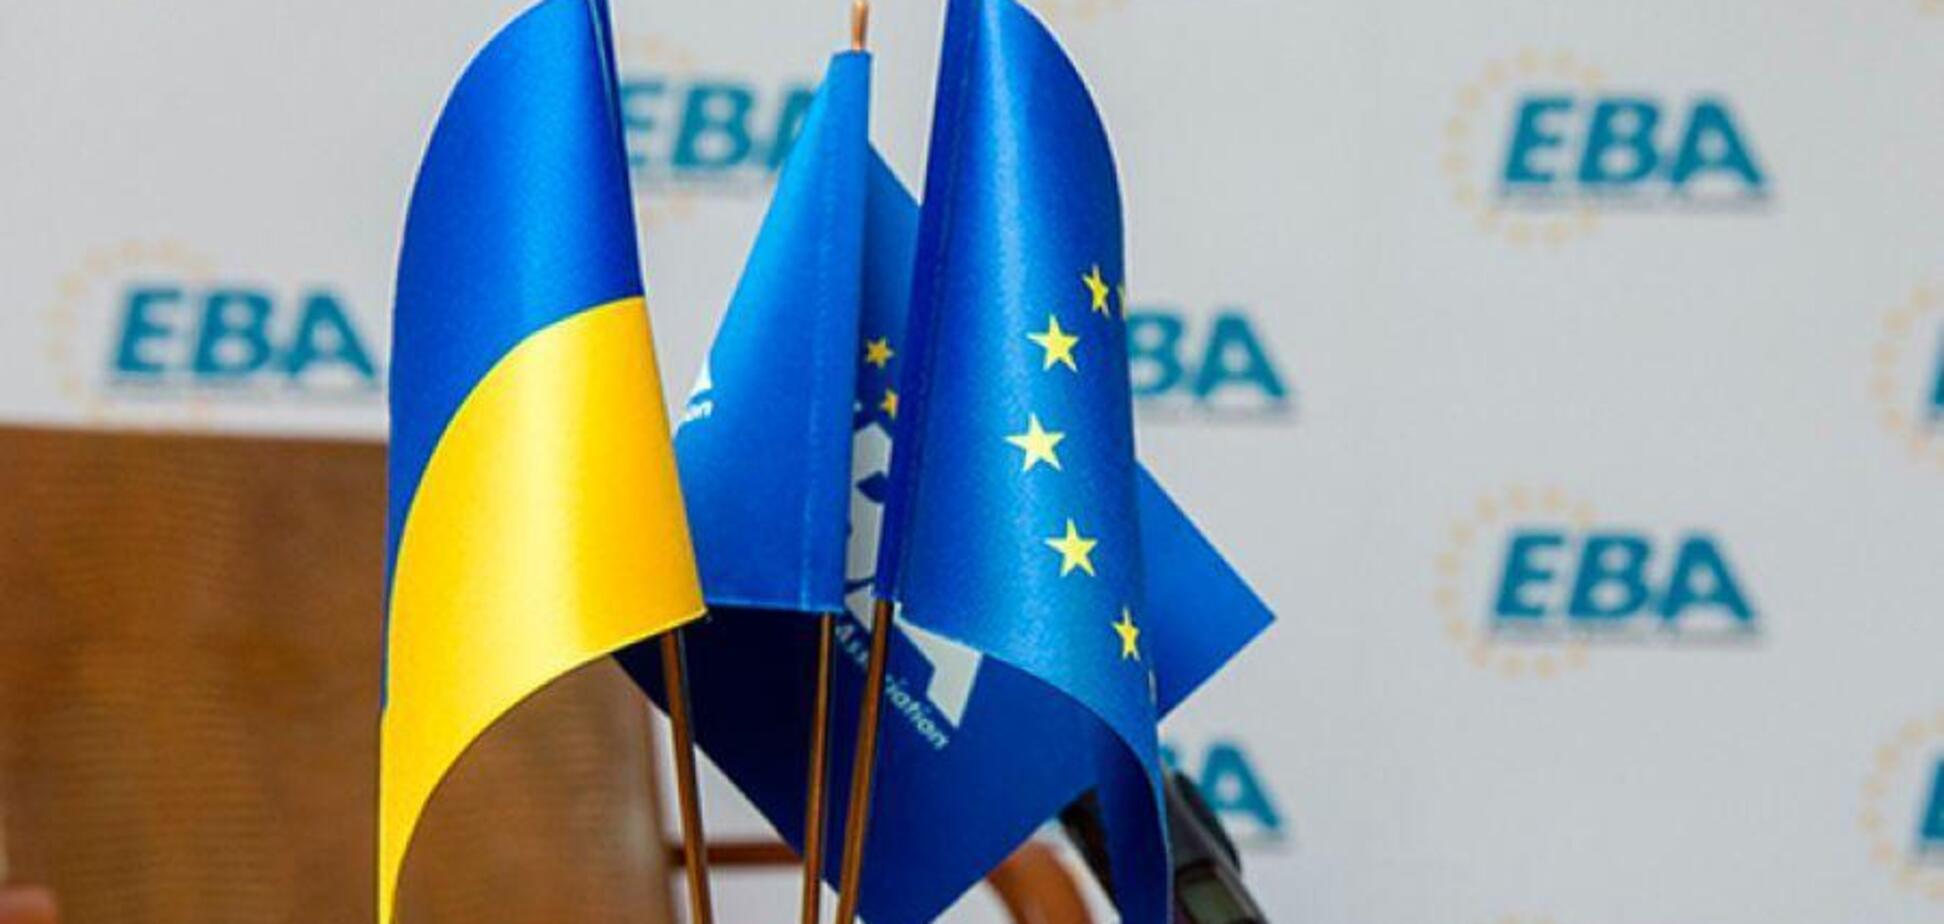 ЕБА предупредила Украину о нарушении обязательств из-за нового акциза на 'зеленую' энергию